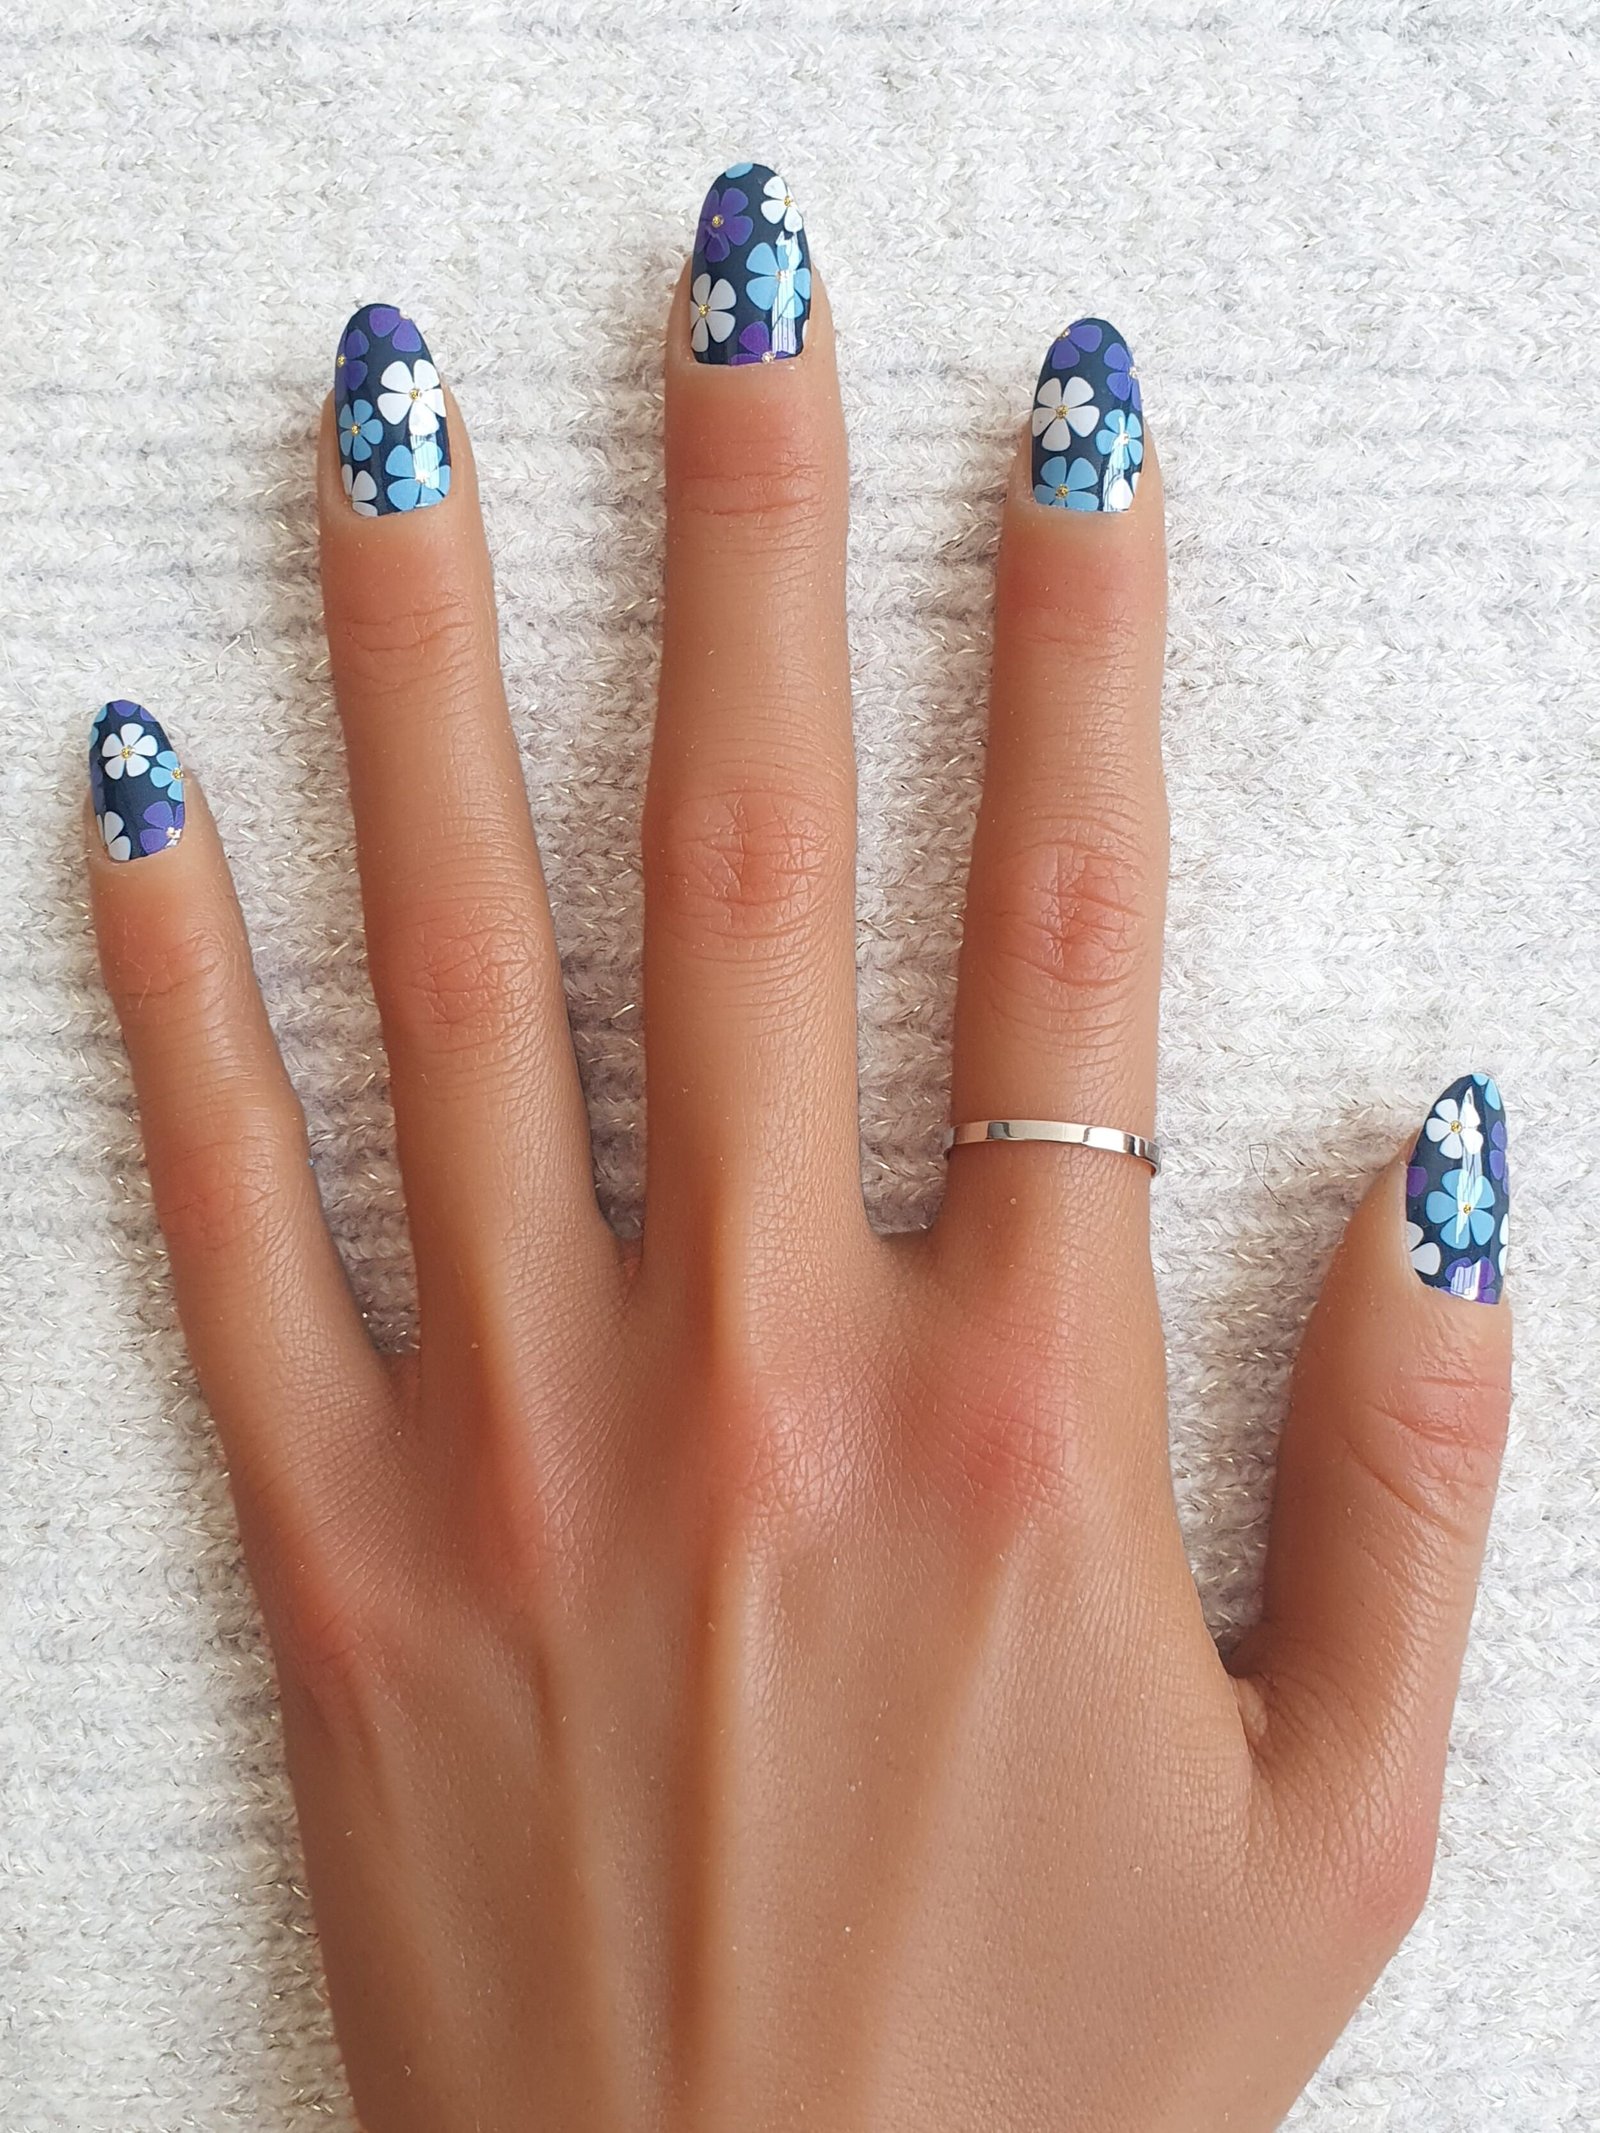 Main ornée d'autocollants nail art avec des motifs floraux bleus et blancs.